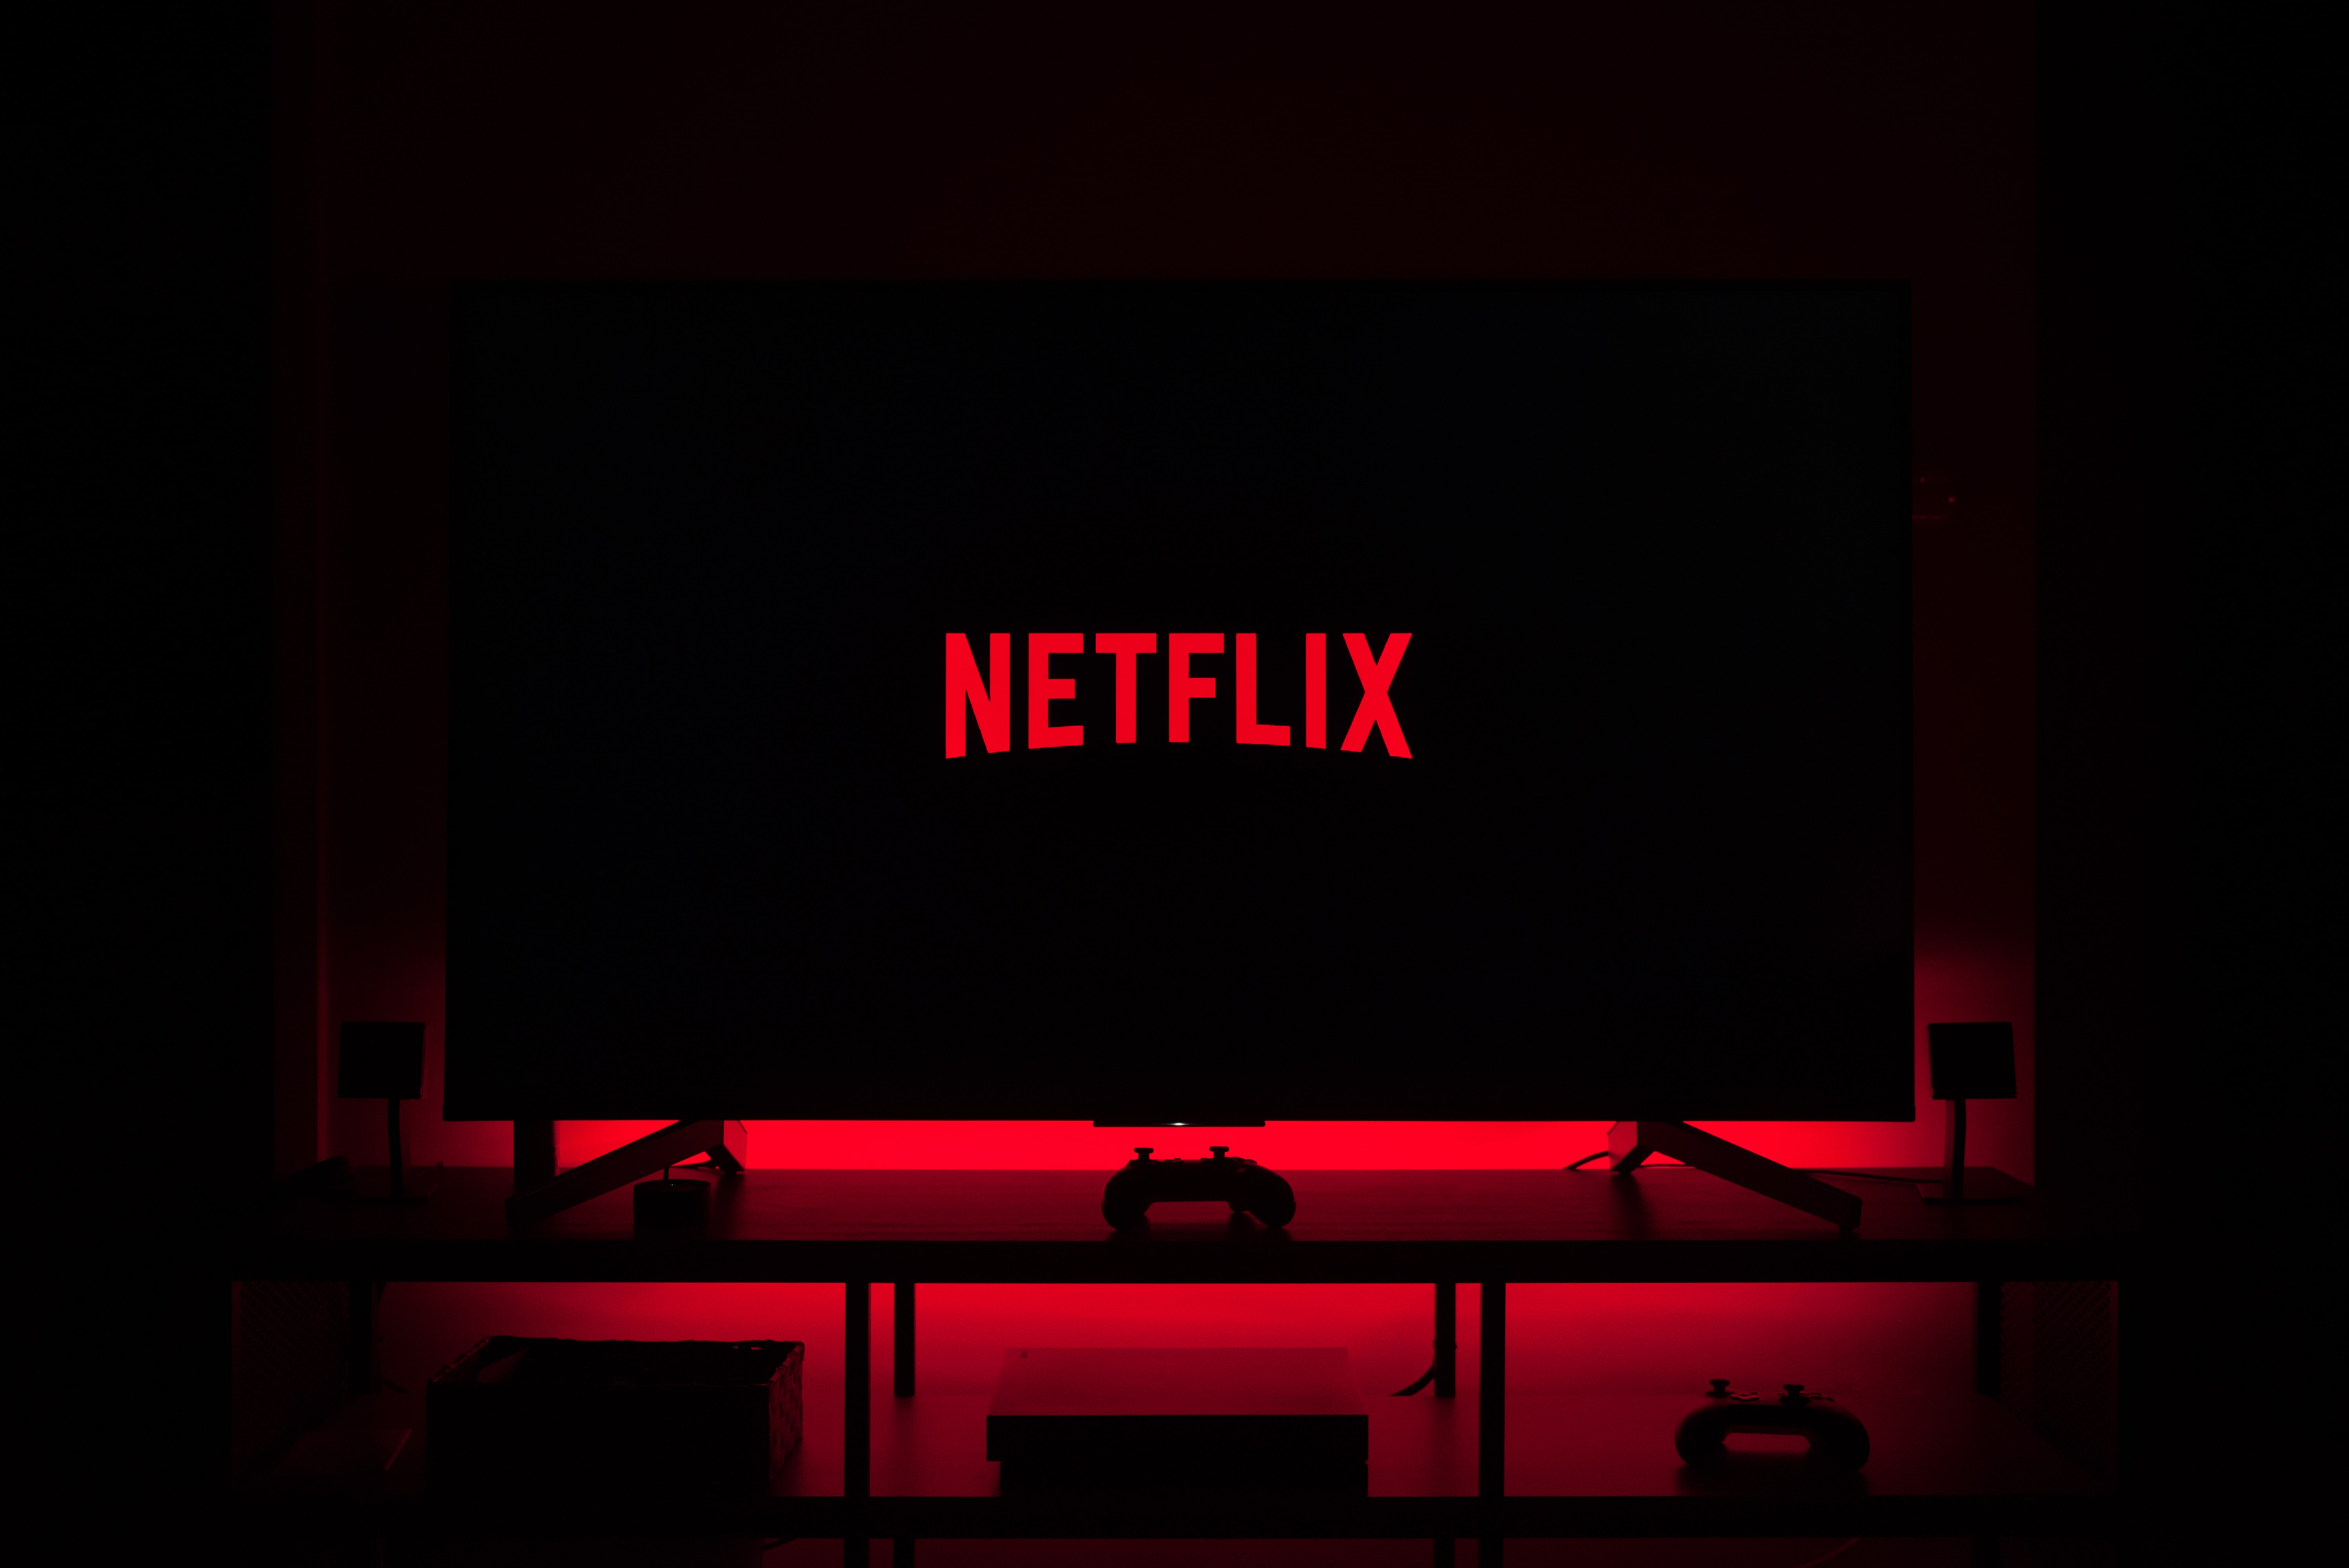 Netflix Tv , HD Wallpaper & Backgrounds